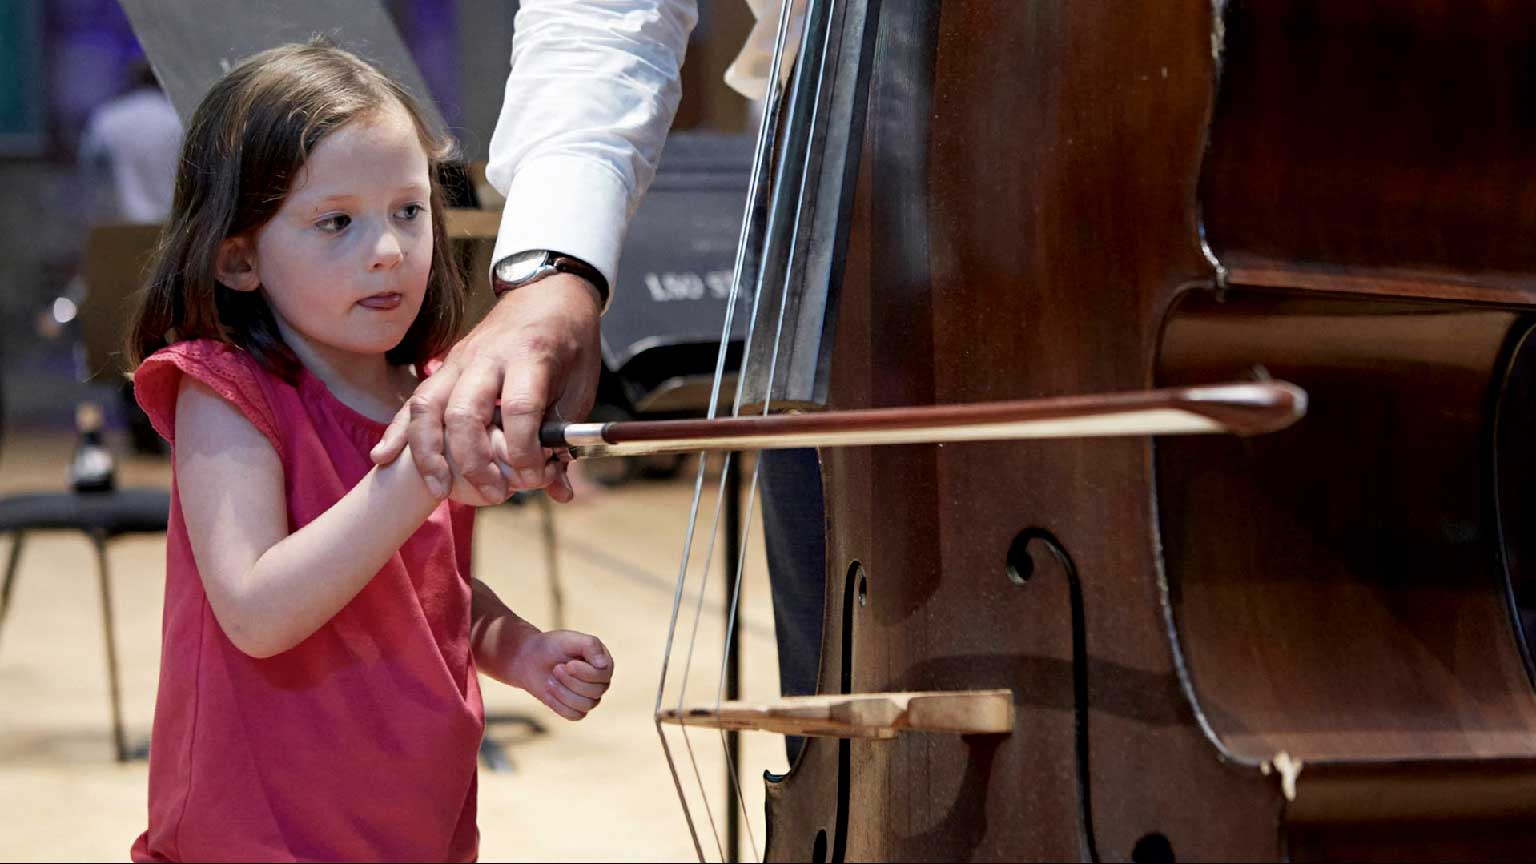 Apportez votre soutien financier à l'Orchestre de Chambre du Languedoc, afin de favoriser l'éducation musical près de chez vous